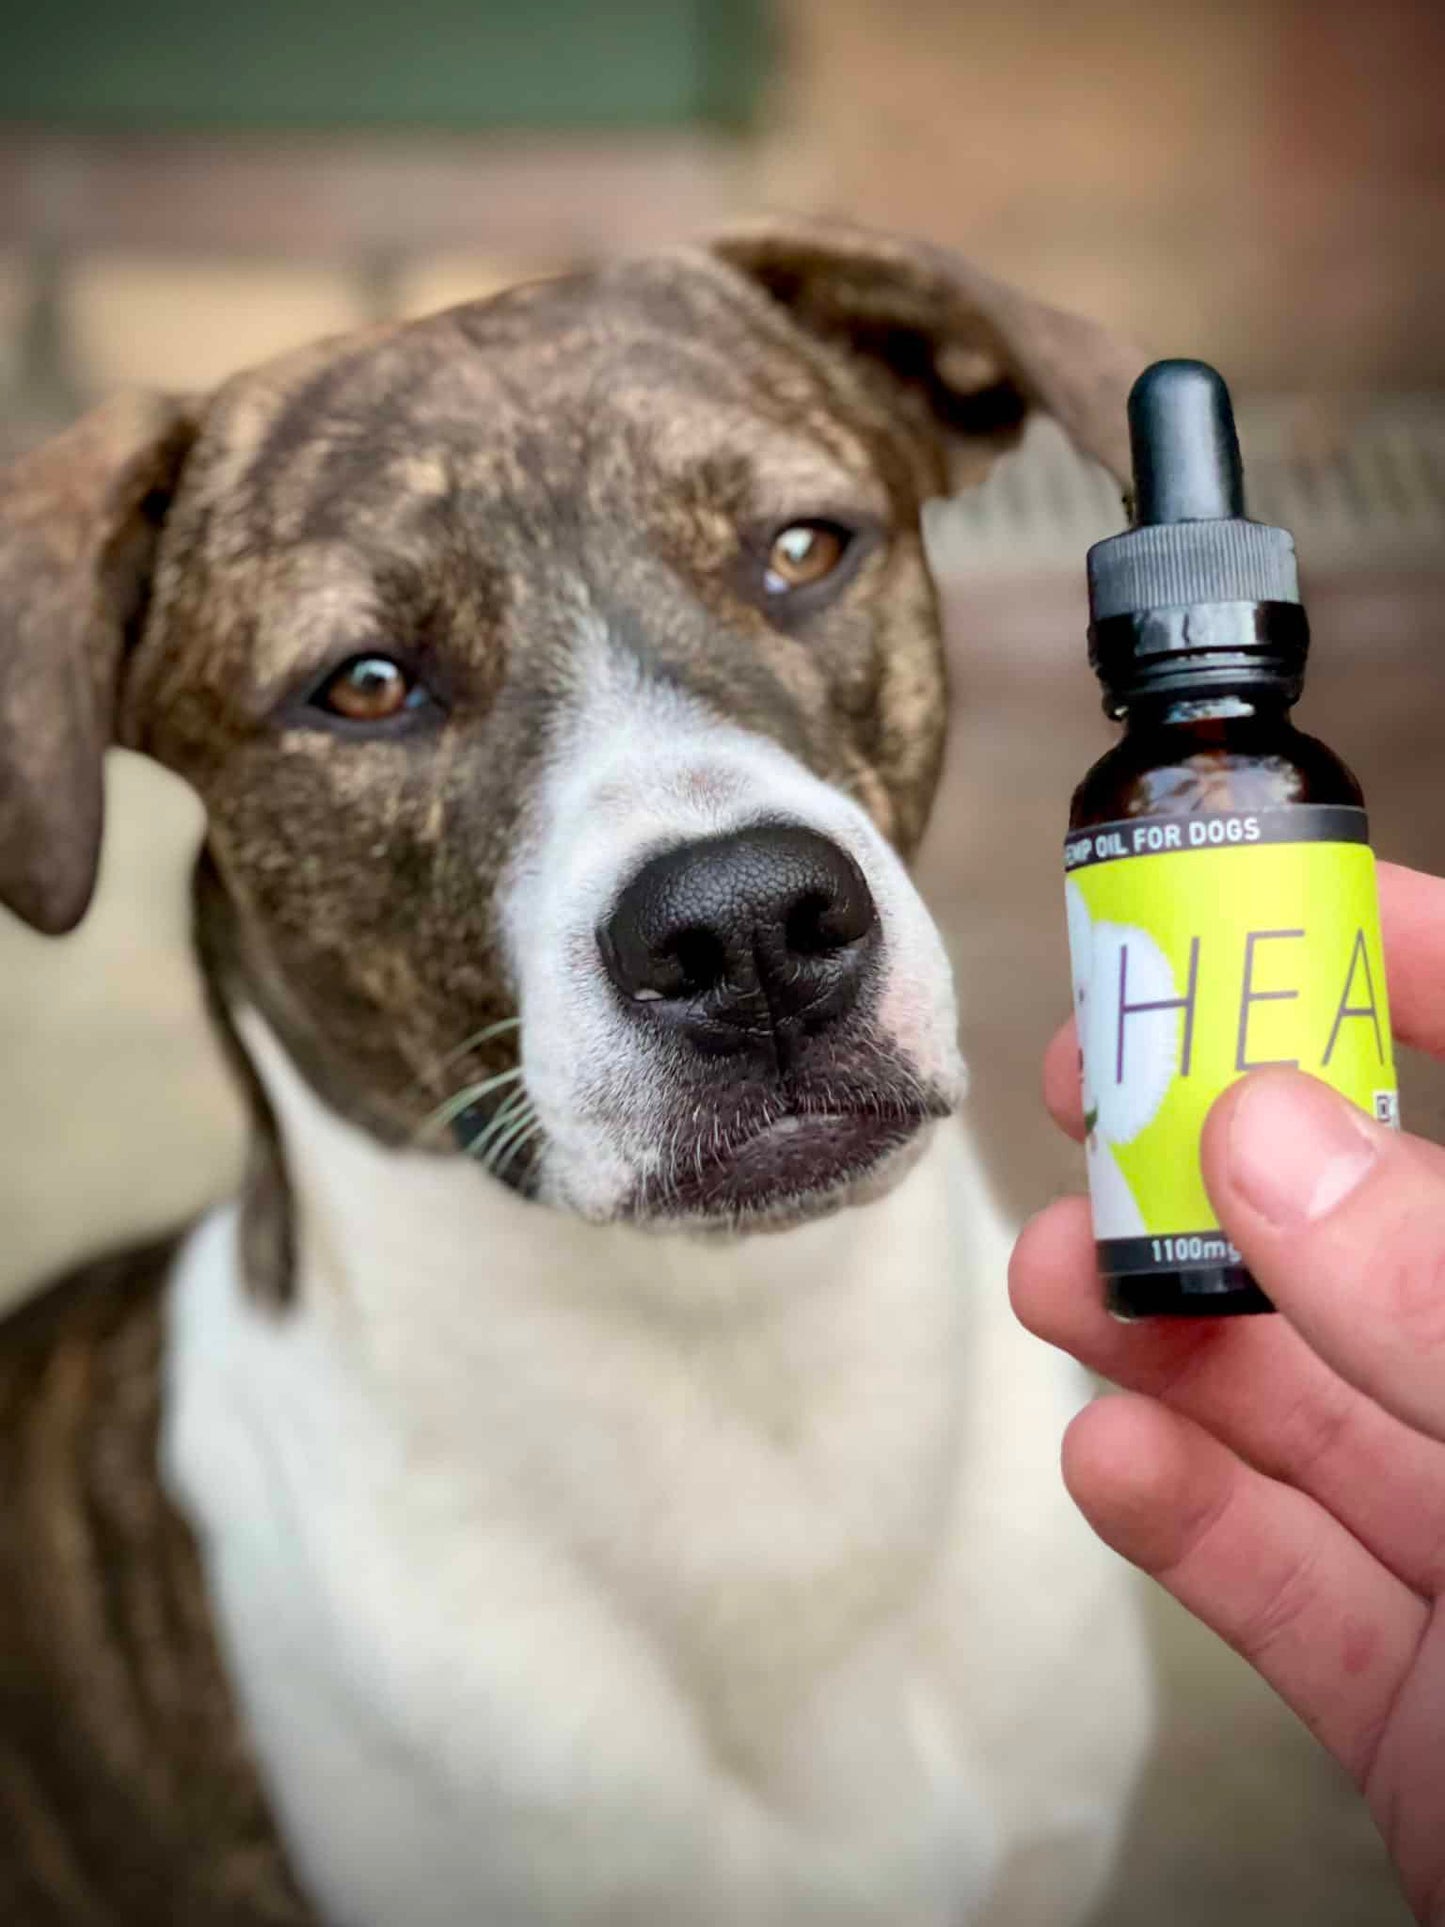 HEAL: Hemp Oil for Dogs - (Seizures, Auto-Immune, Cushing's, Cancer & Tumors)